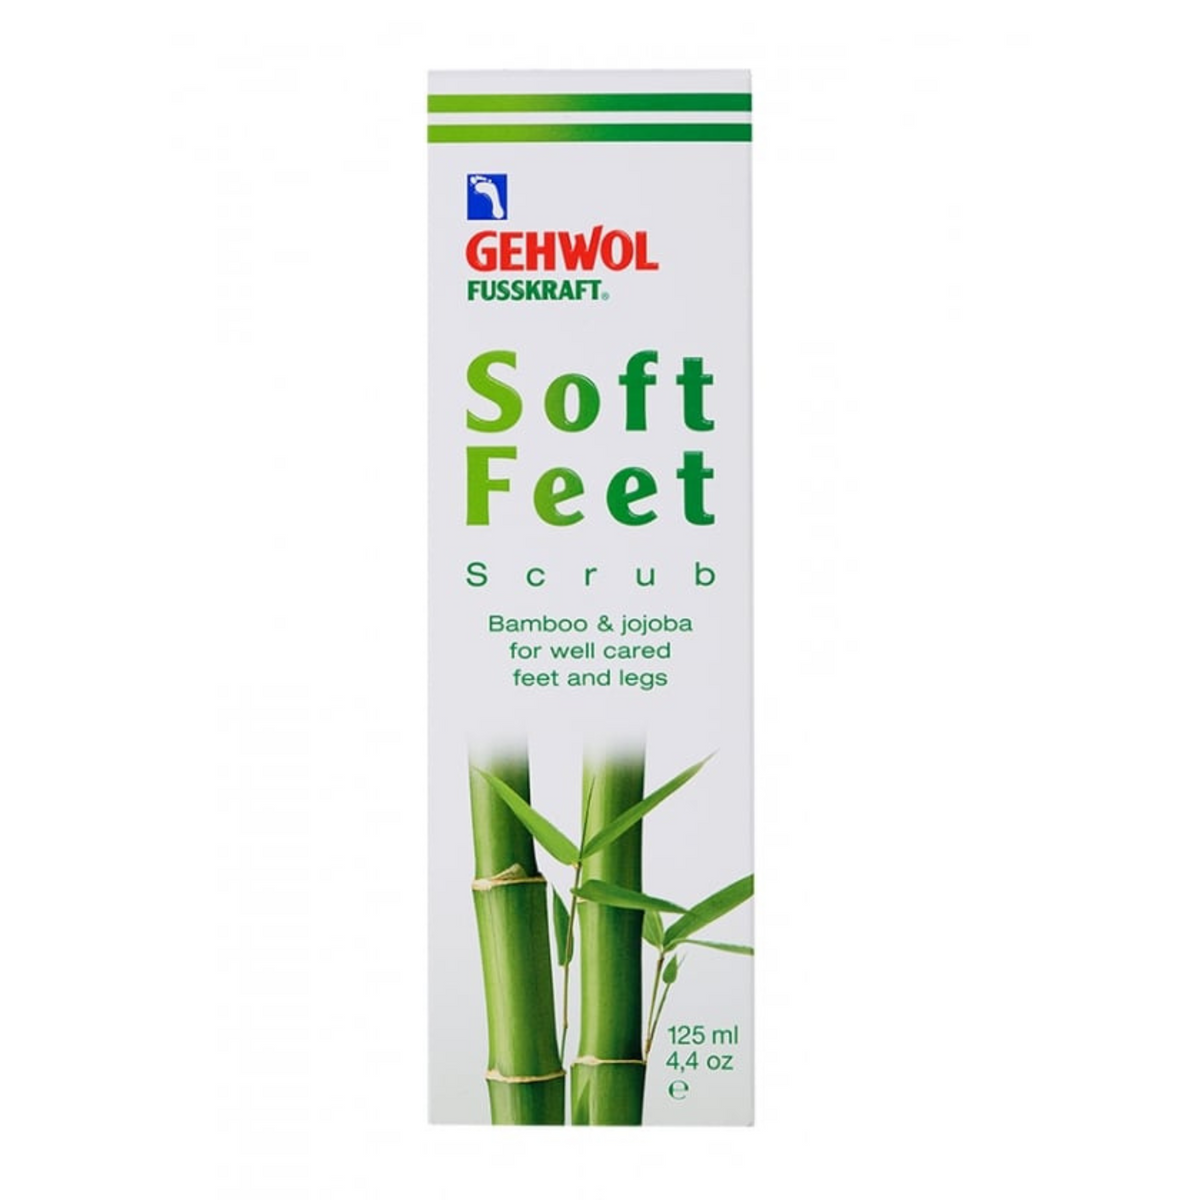 Primary Image of Gehwol Fusskraft Soft Feet Scrub (125 ml) 